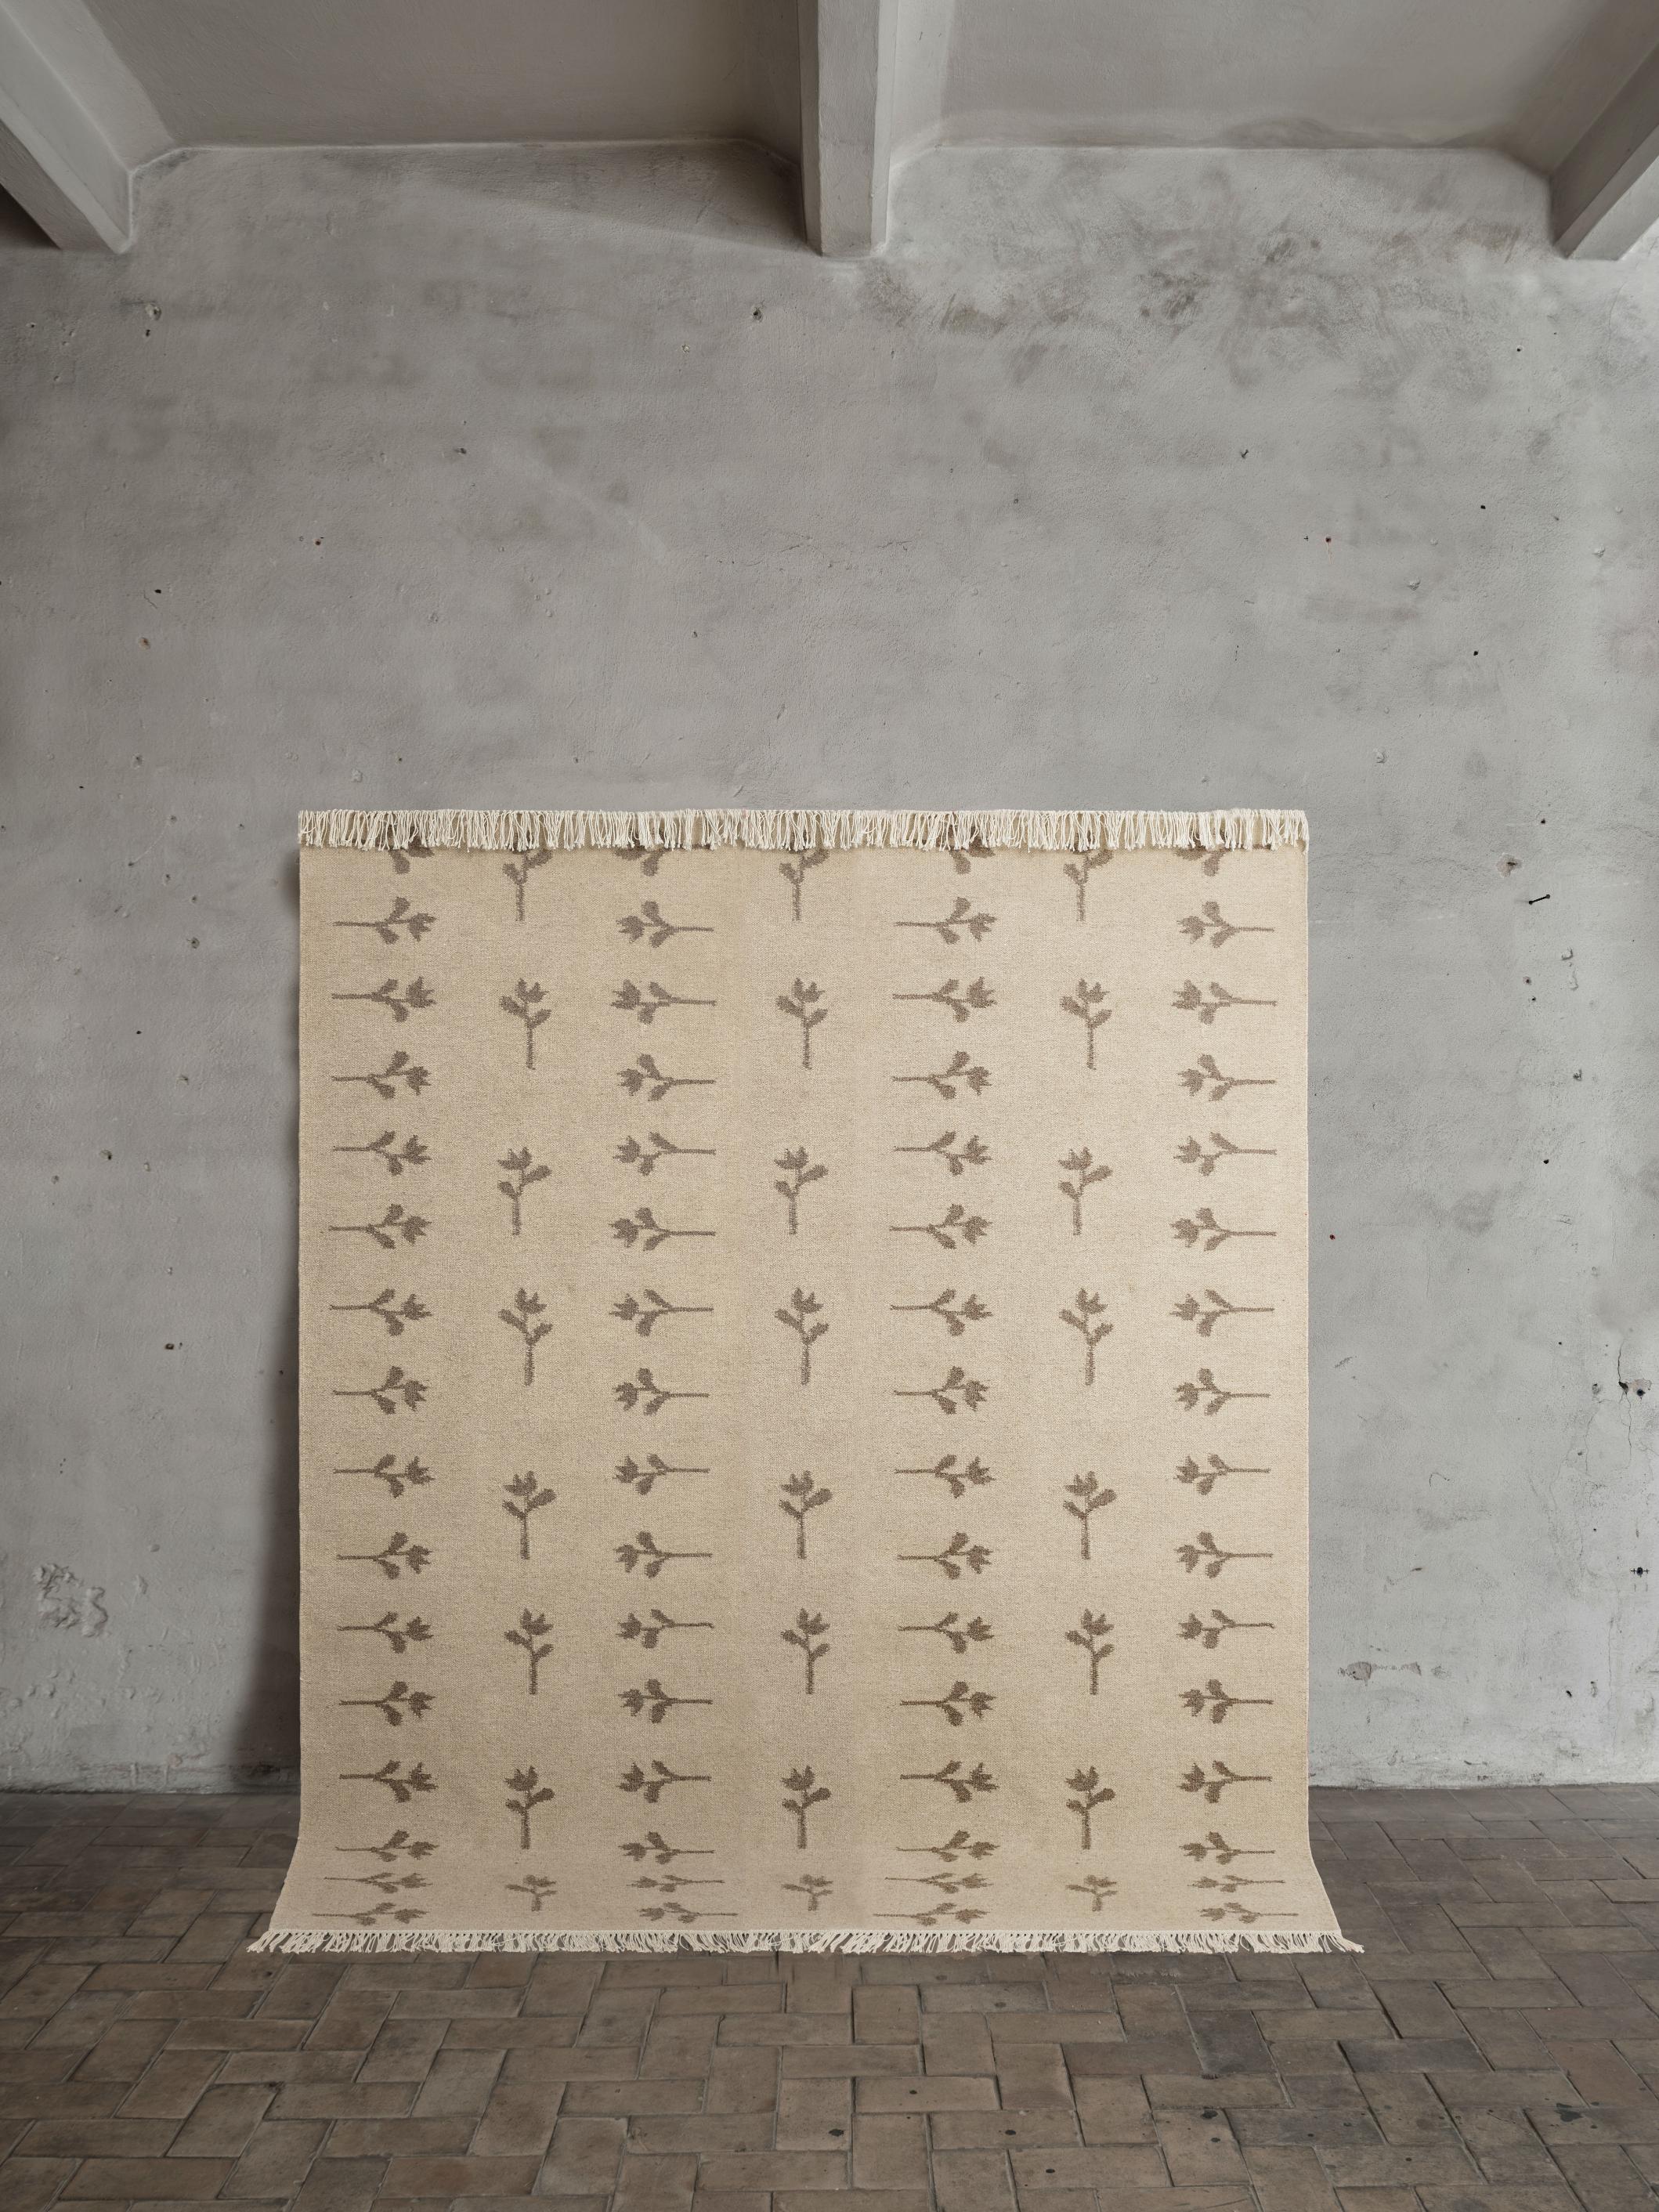 Teppich Nr. 17 von Cappelen Dimyr
Abmessungen: T 230 x H 280 cm (ohne Fransen)
MATERIALIEN: 85% Wolle, 15% Baumwolle

Teppich Nr. 17 ist ein leichter, handgefertigter Flachgewebe-Teppich aus natürlicher Wolle. Der Teppich ist in einem mittelbraunen